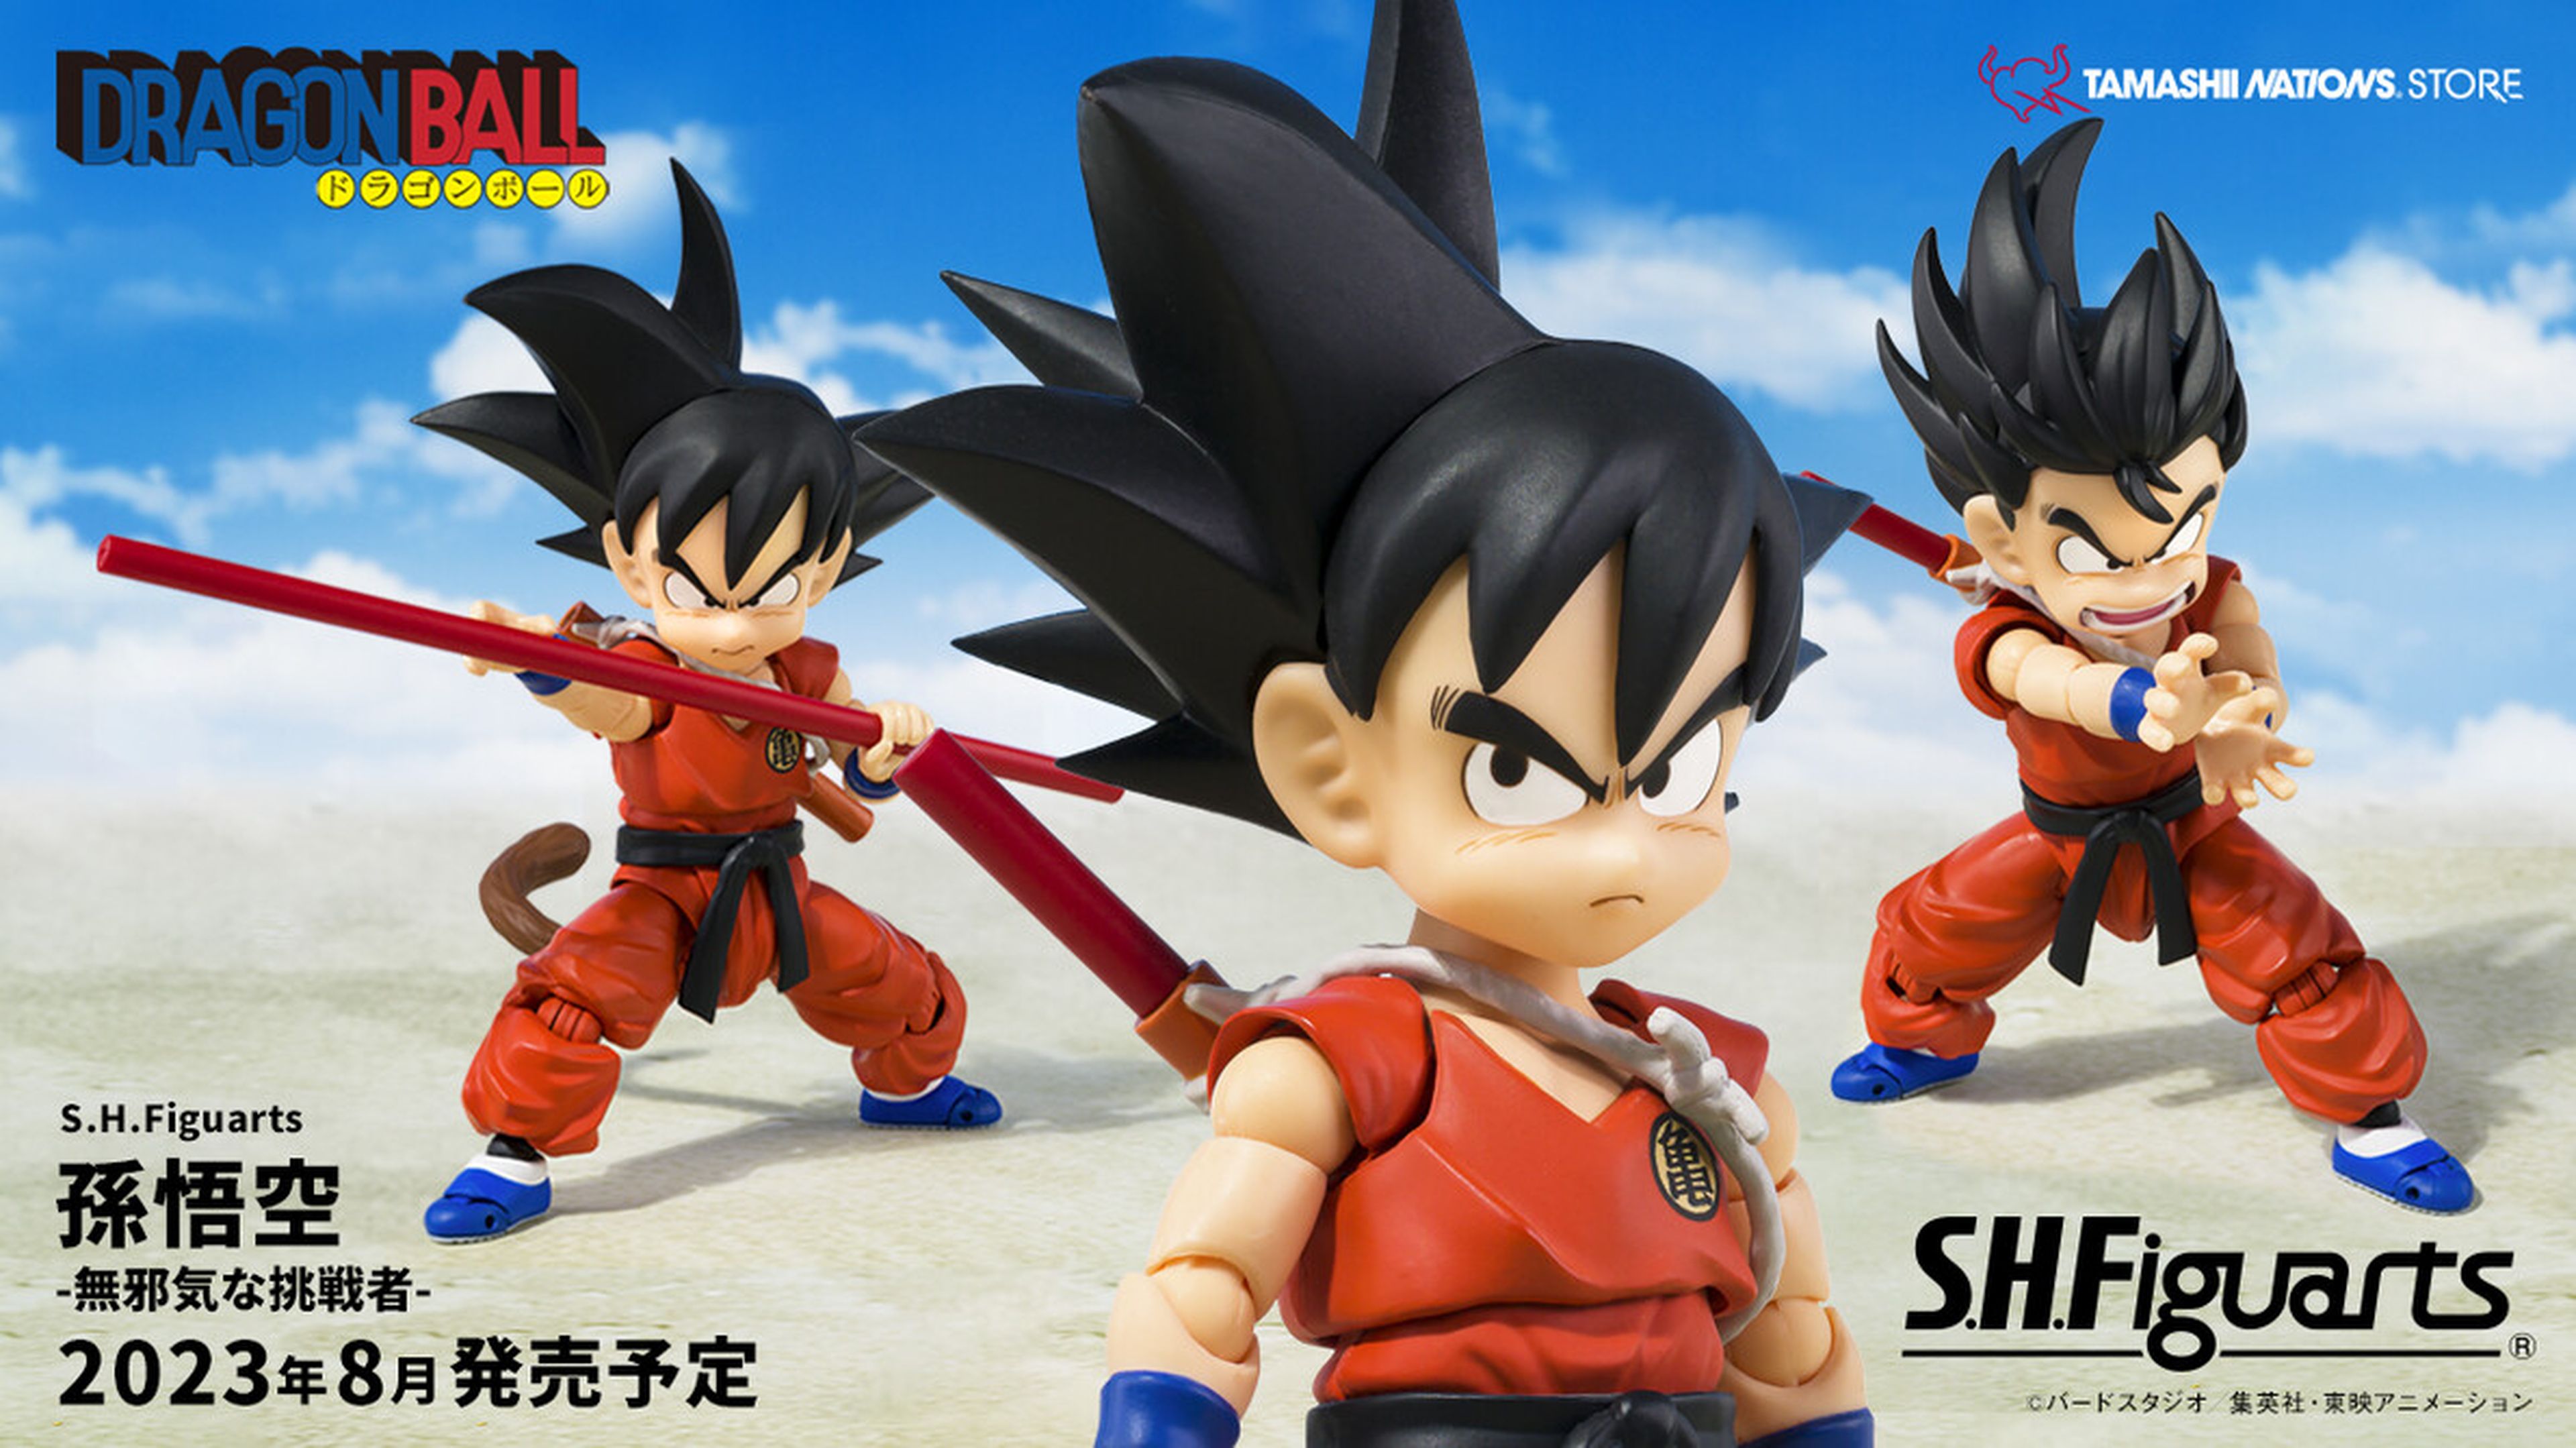 Dragon Ball - Anunciada una nueva figura SH Figuarts de Goku niño de la Saga de Piccolo Daimaoh